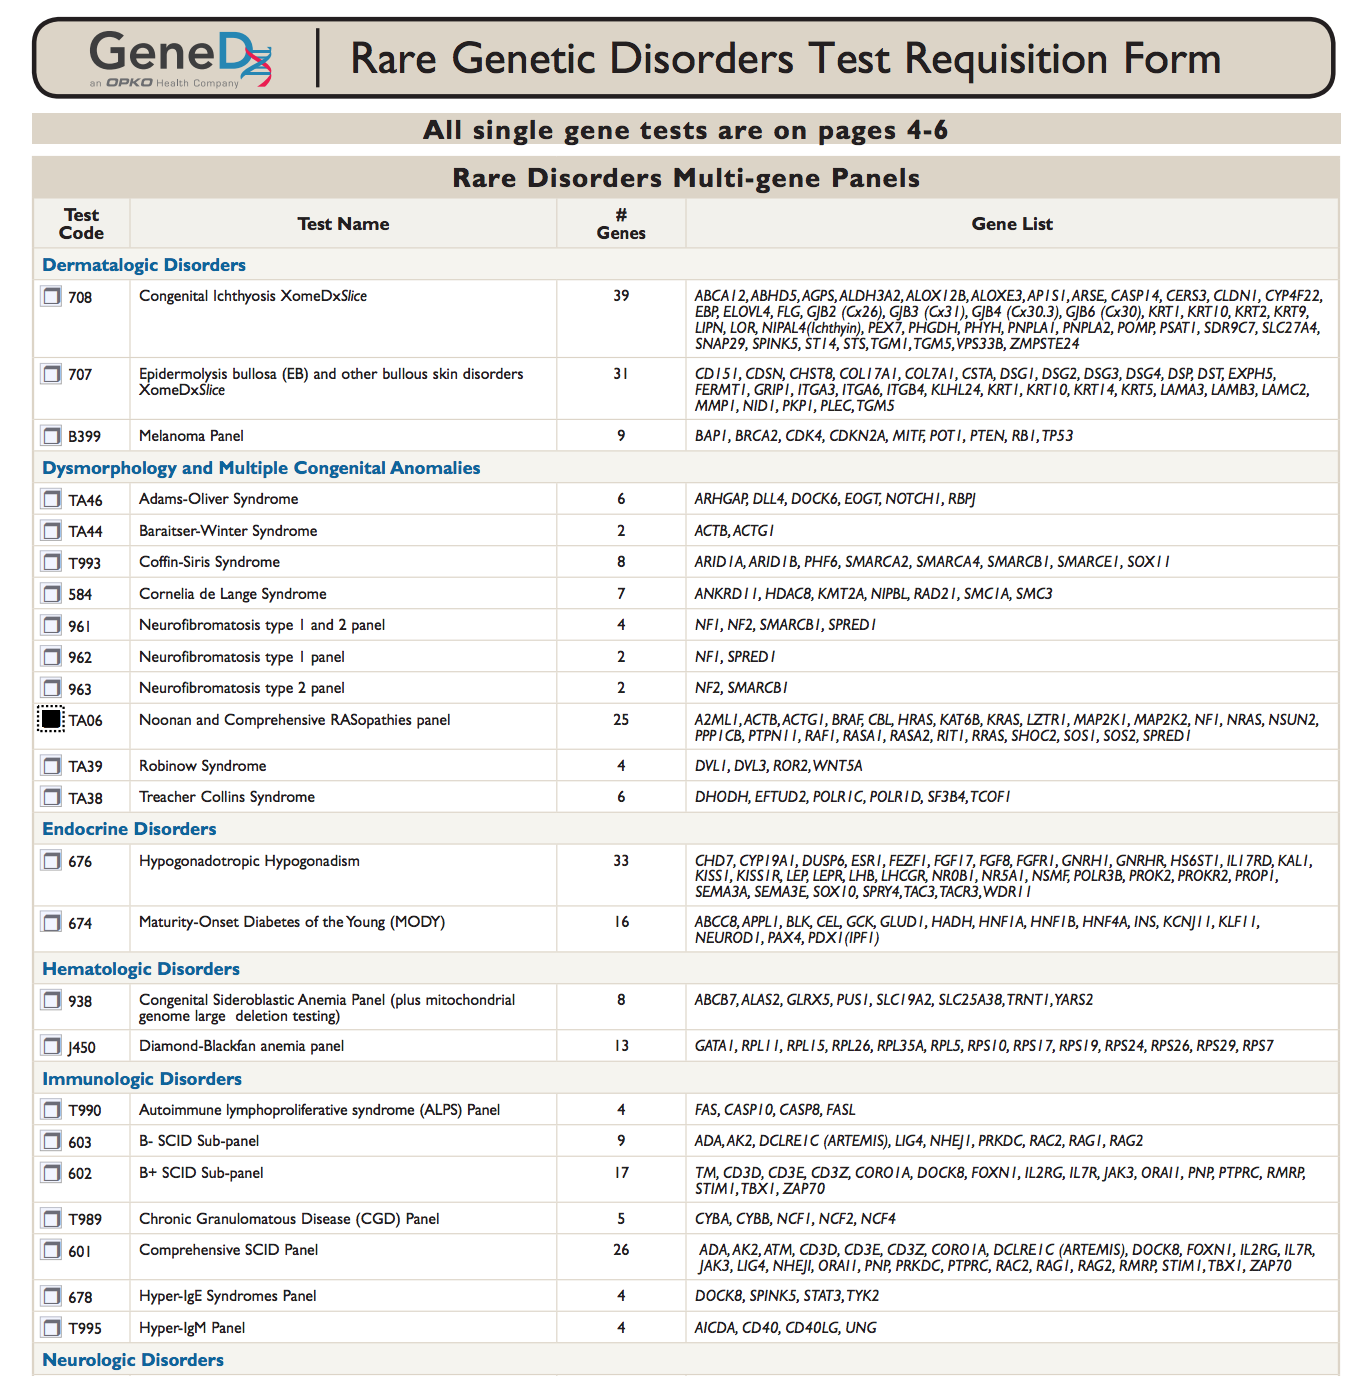 Tabelle mit Listen mit Tests, deren Codes, Namen, Anzahl der Gene, in denen die getestete Krankheit vorkommt, und die Liste dieser Gene